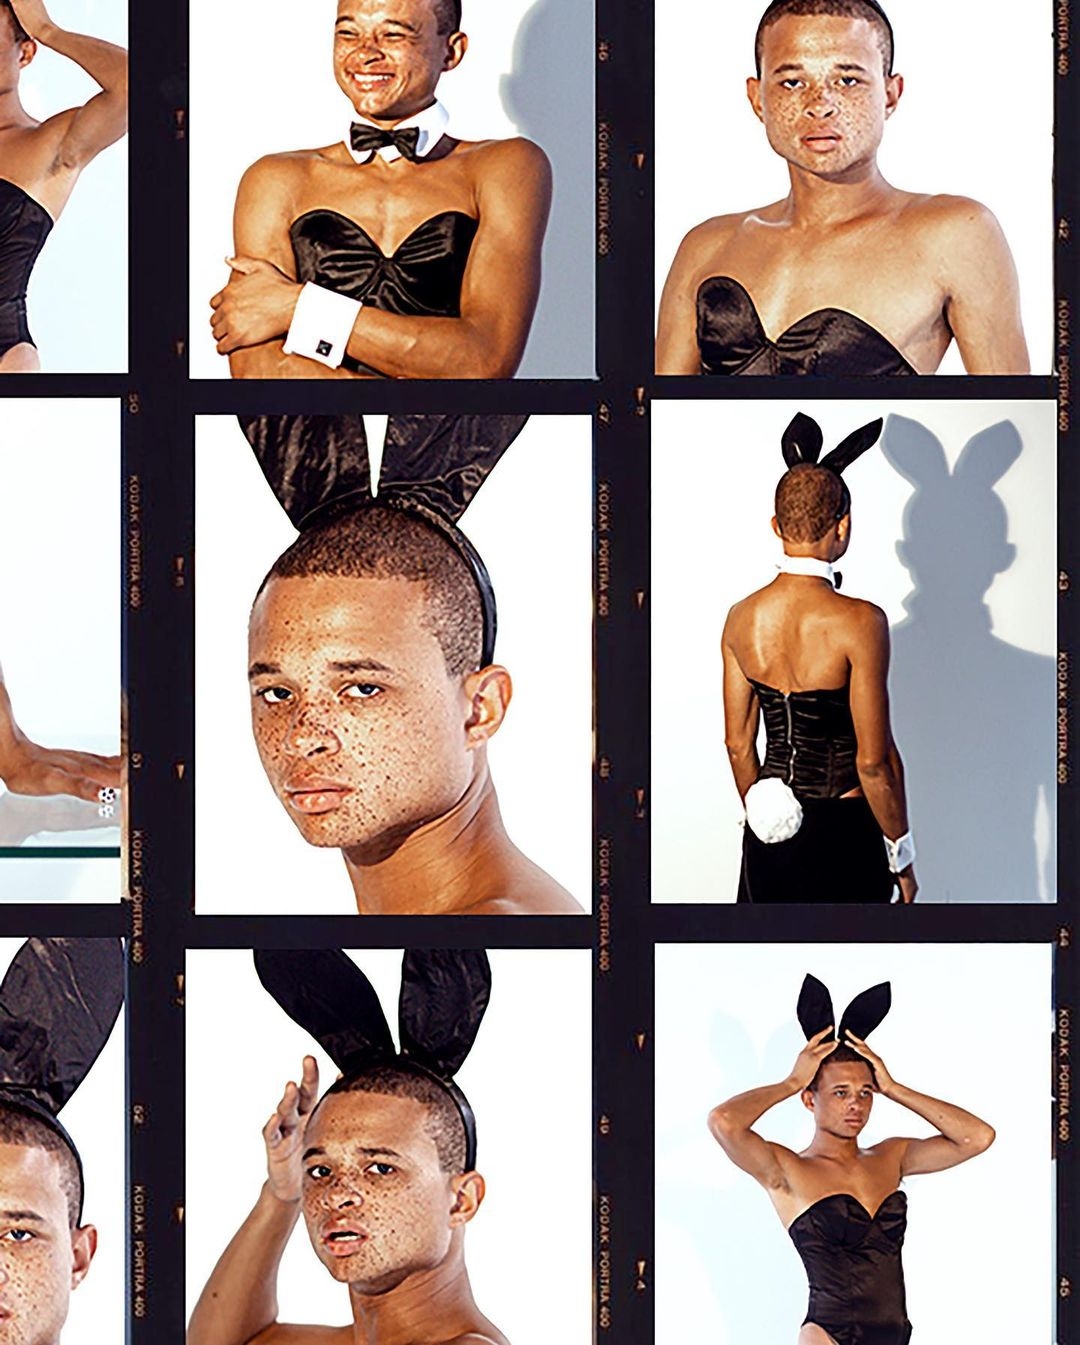 В образах зайчиков: в новой фотосессии Playboy снялись два парня (ФОТО) - фото №3